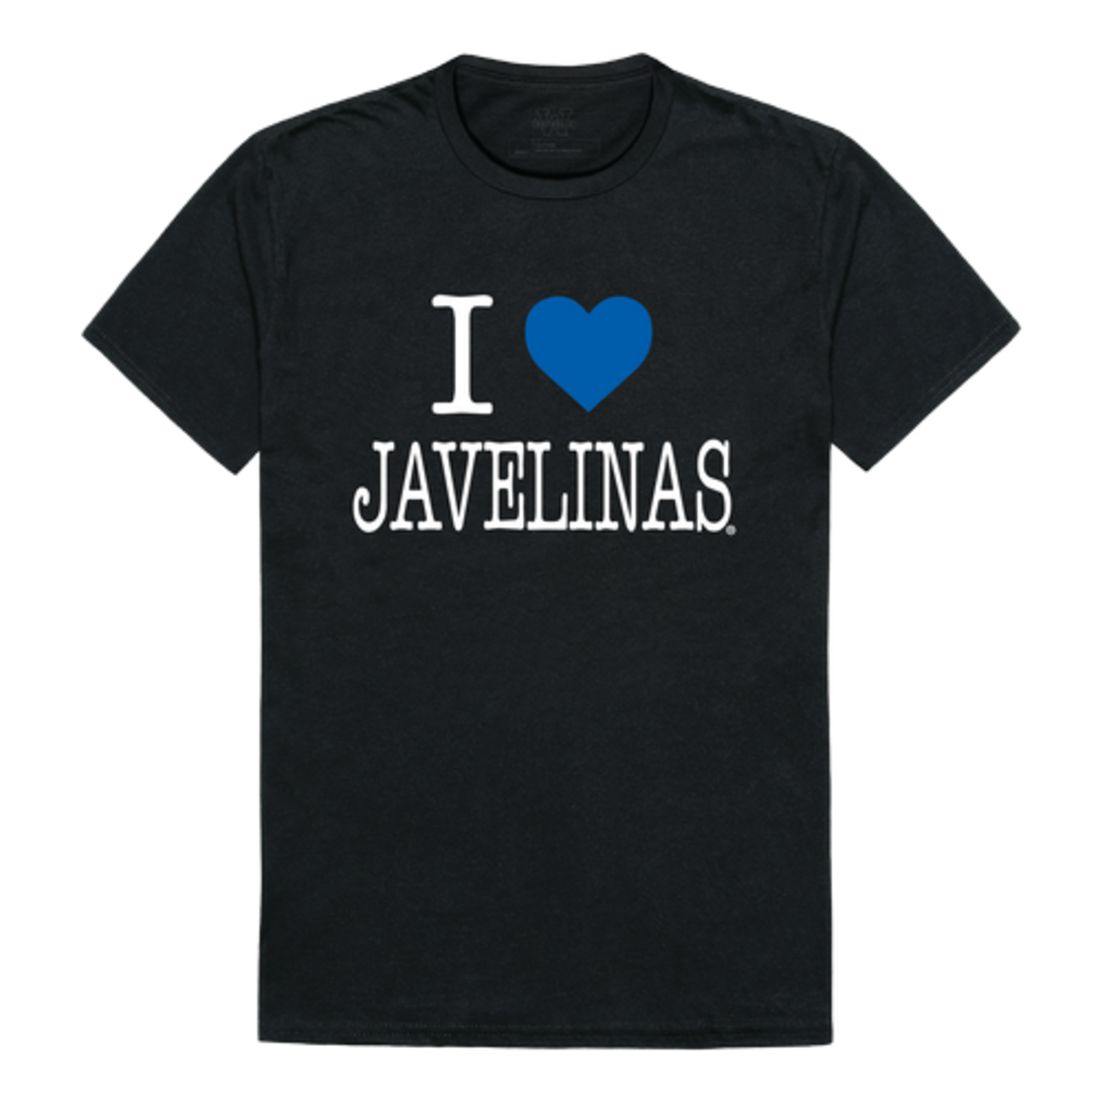 I Love TAMUK Texas A&M University - Kingsville Javelinas T-Shirt-Campus-Wardrobe